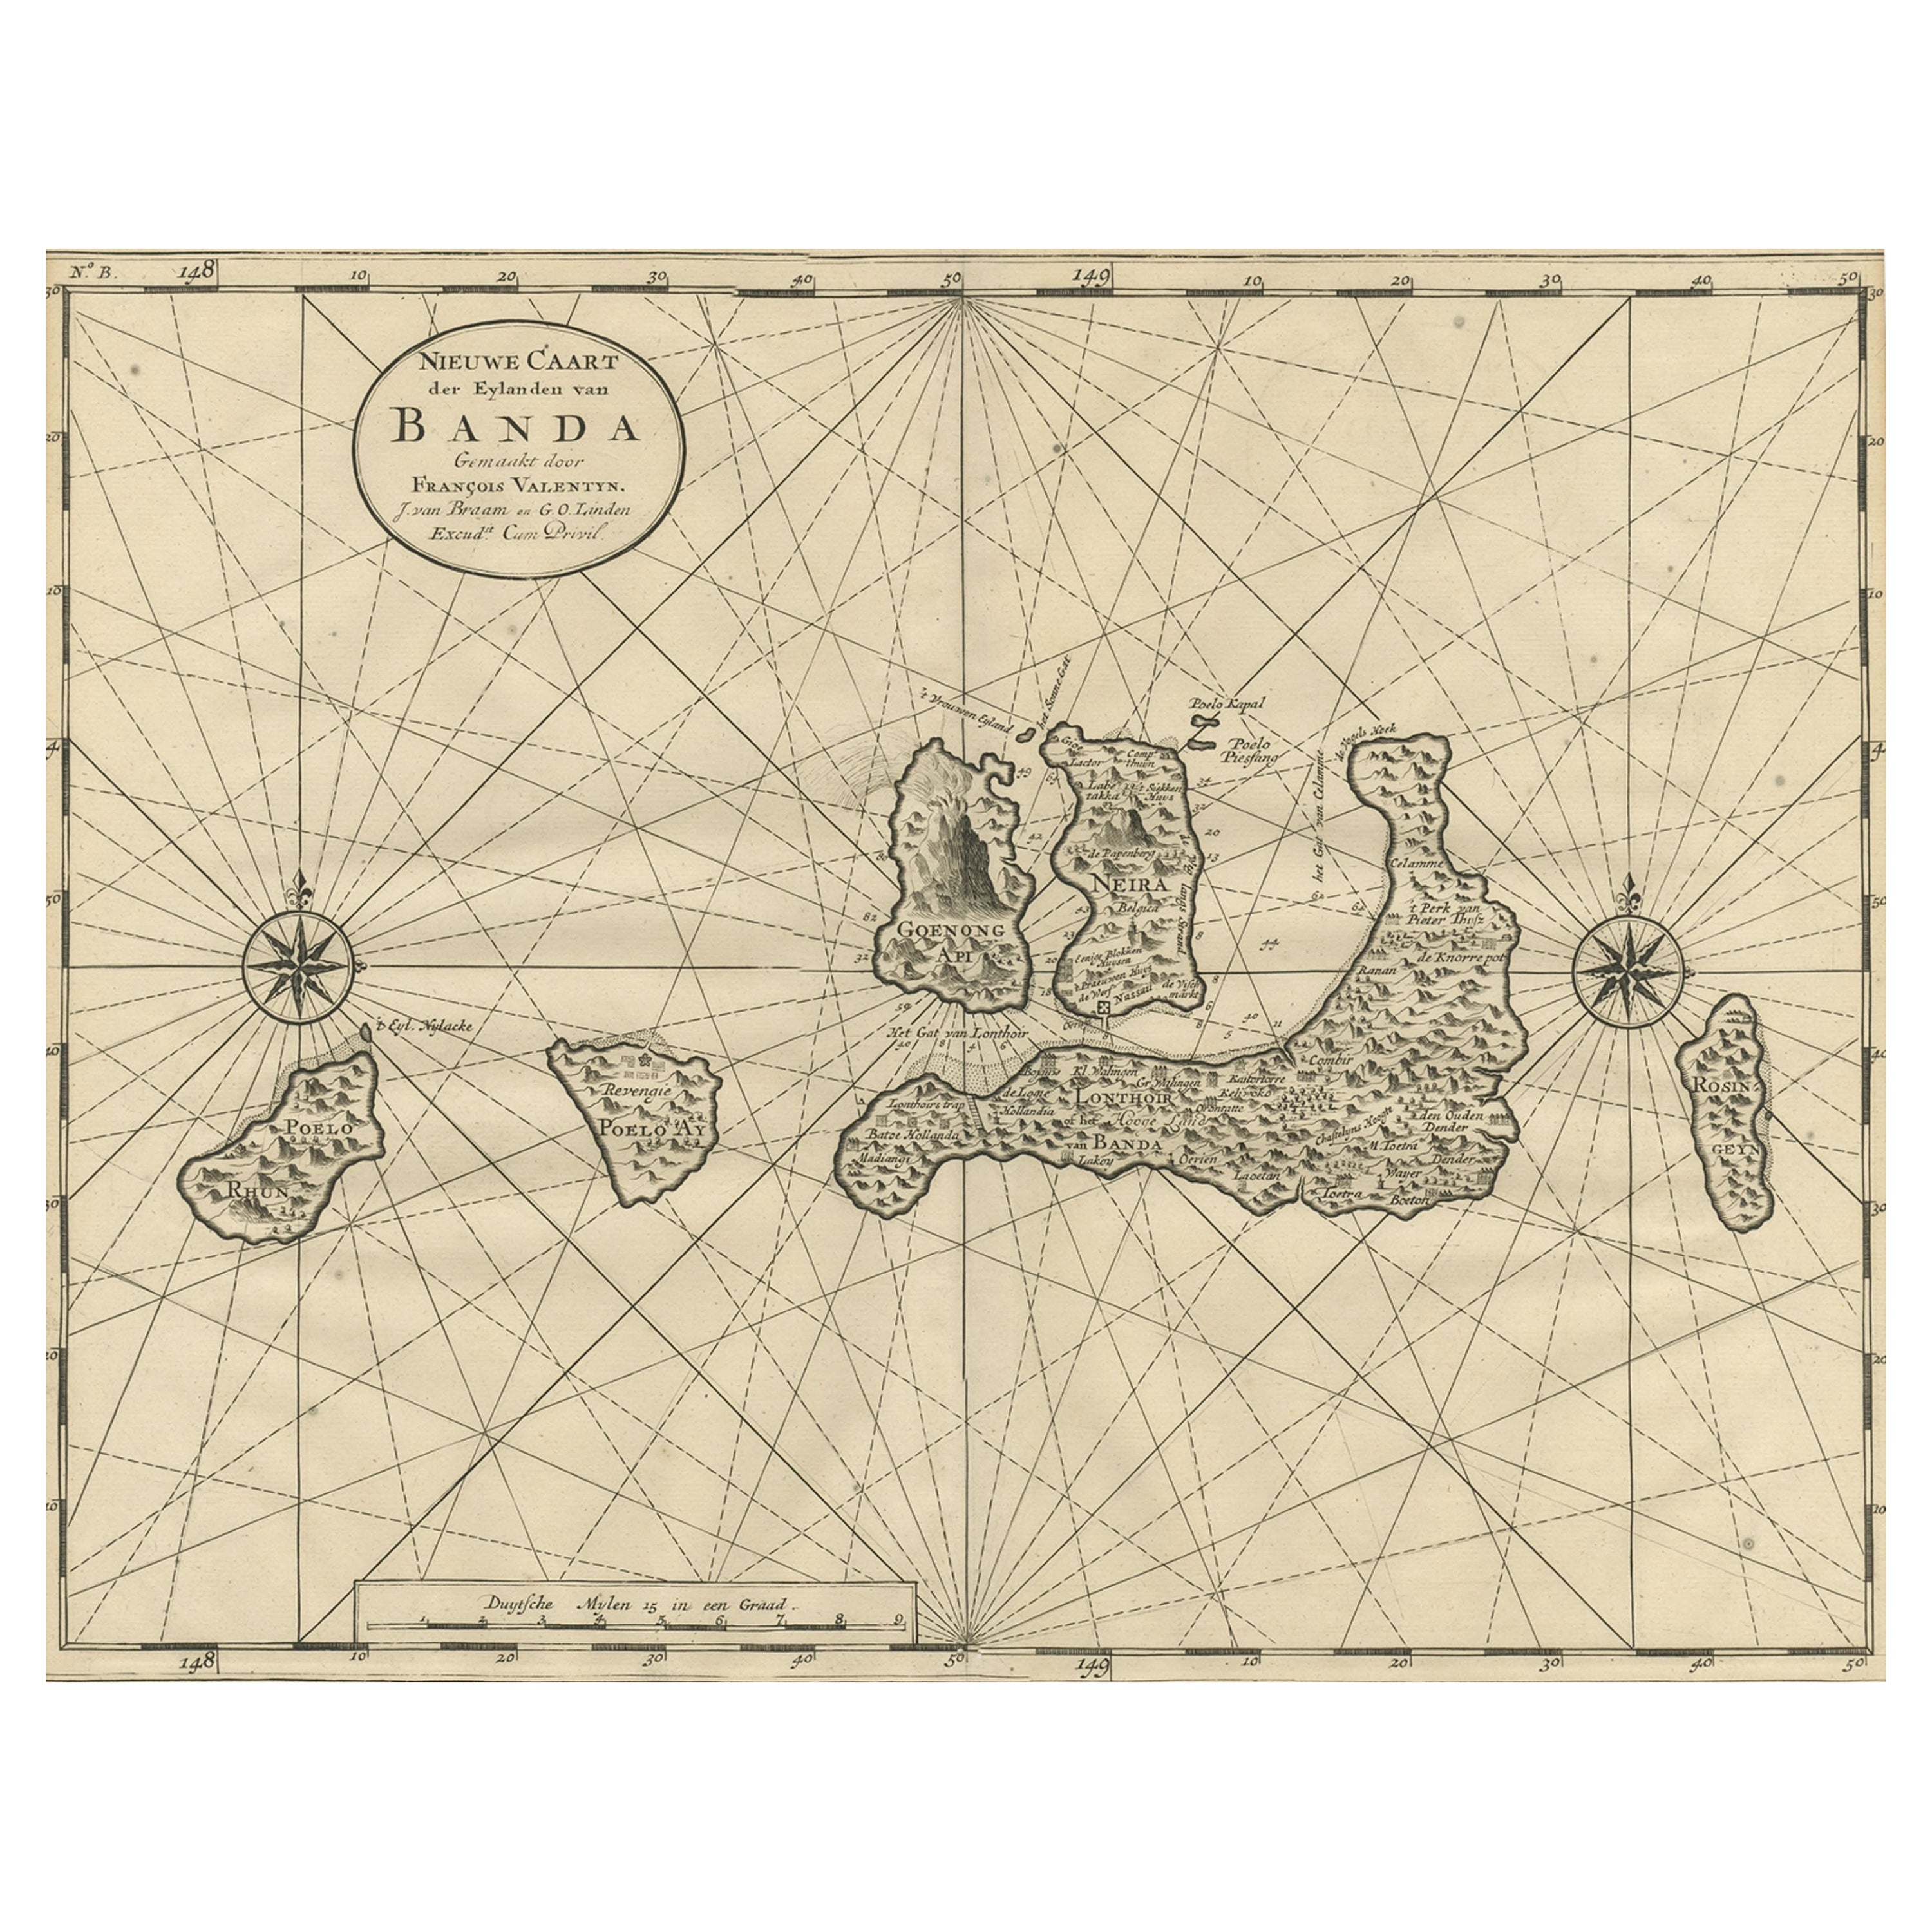 Carte ancienne des îles Banda ou des îles Spice, Indonésie, 1726